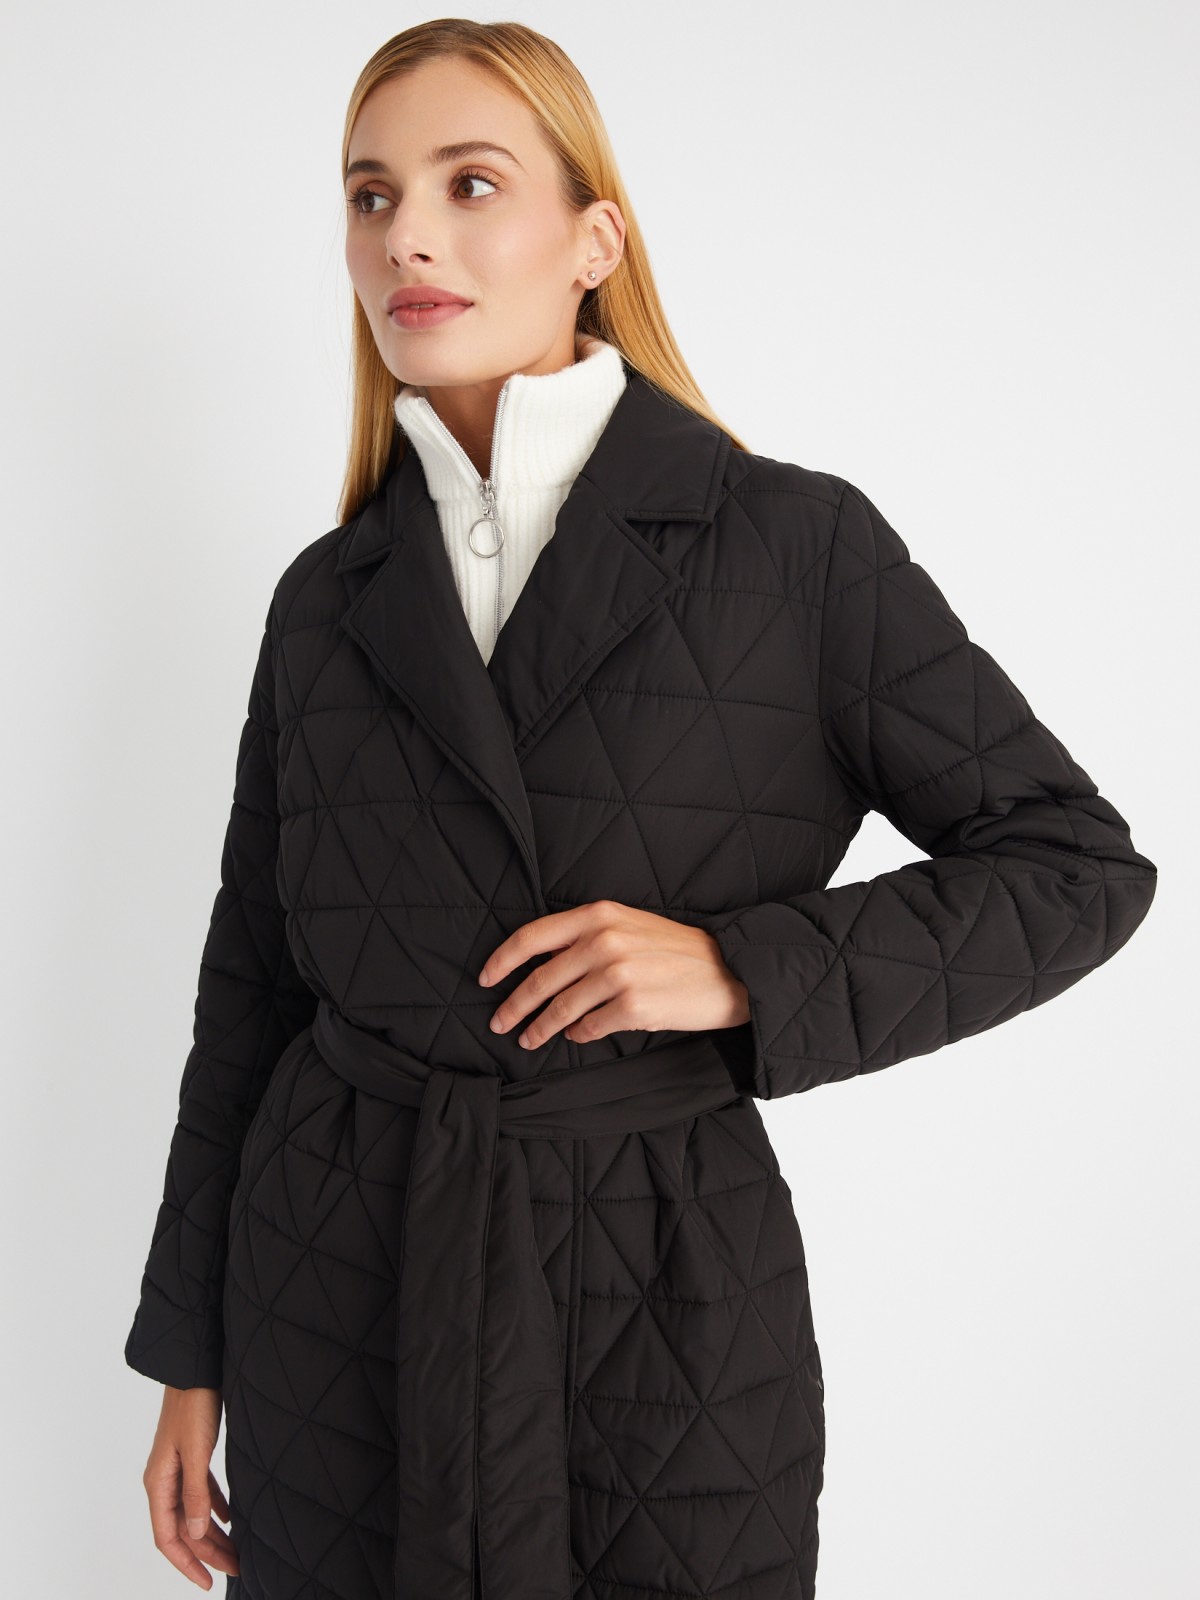 Утеплённая стёганая куртка-пальто с отложным воротником и поясом